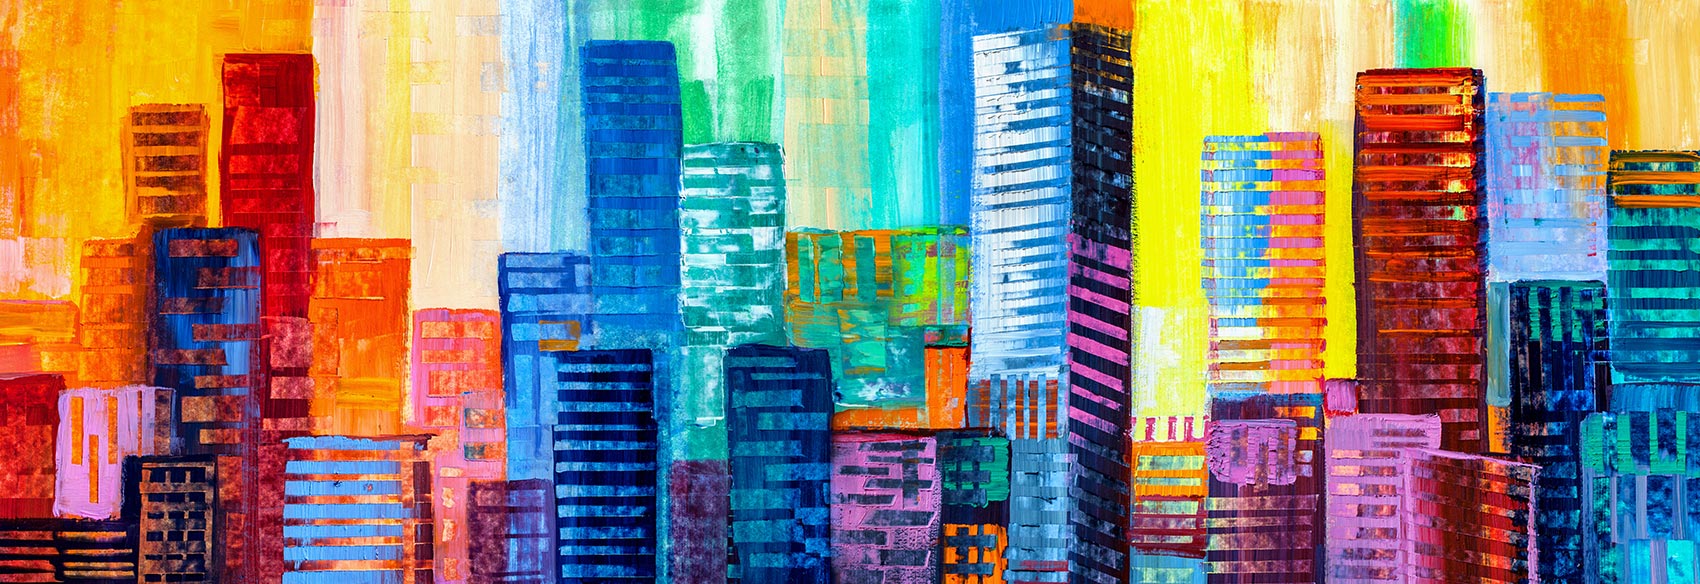 Pintando edifícios coloridos